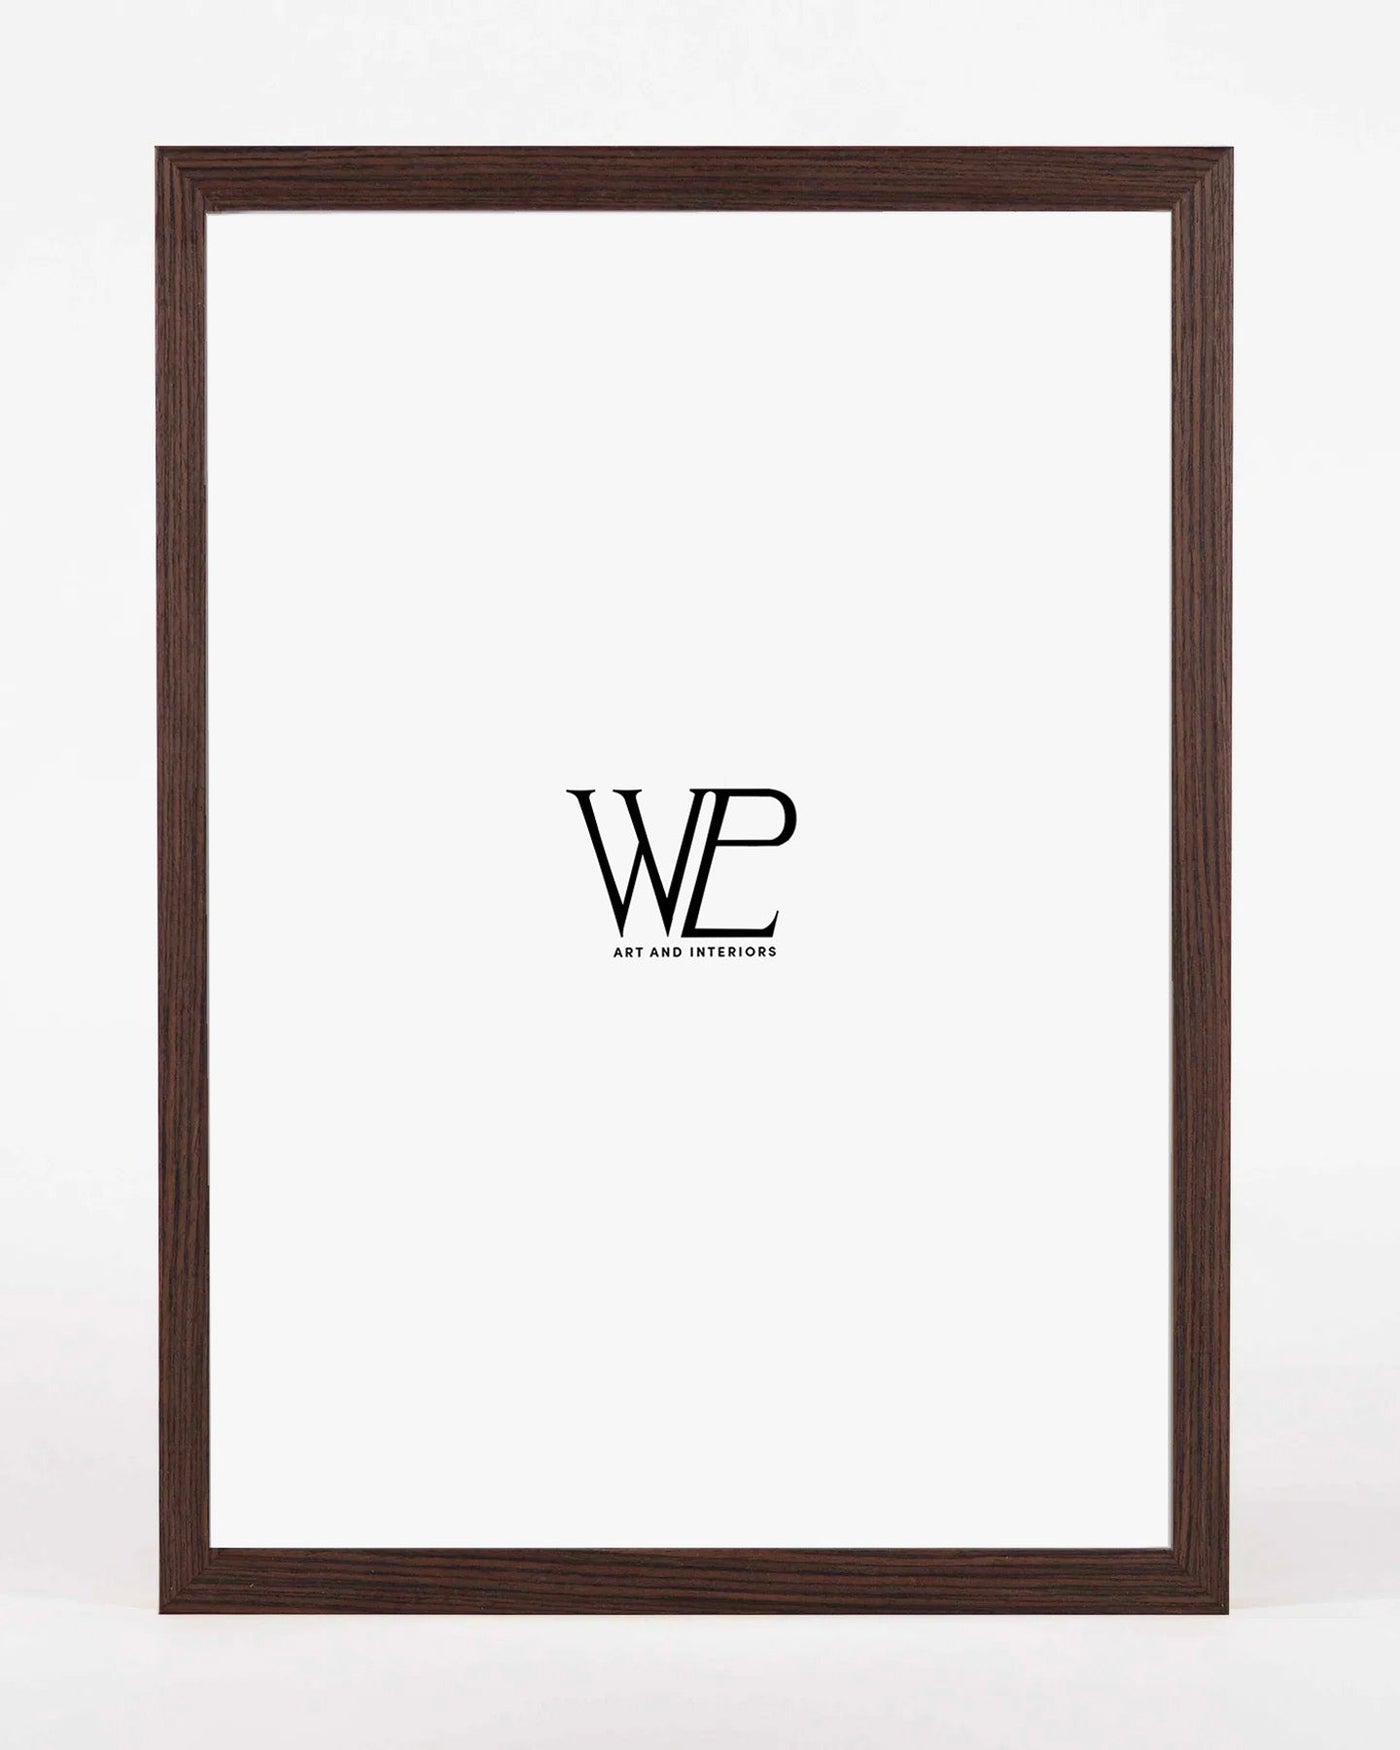 Premium Dark Walnut Picture Frame, 30x40cm Size Photo Frame